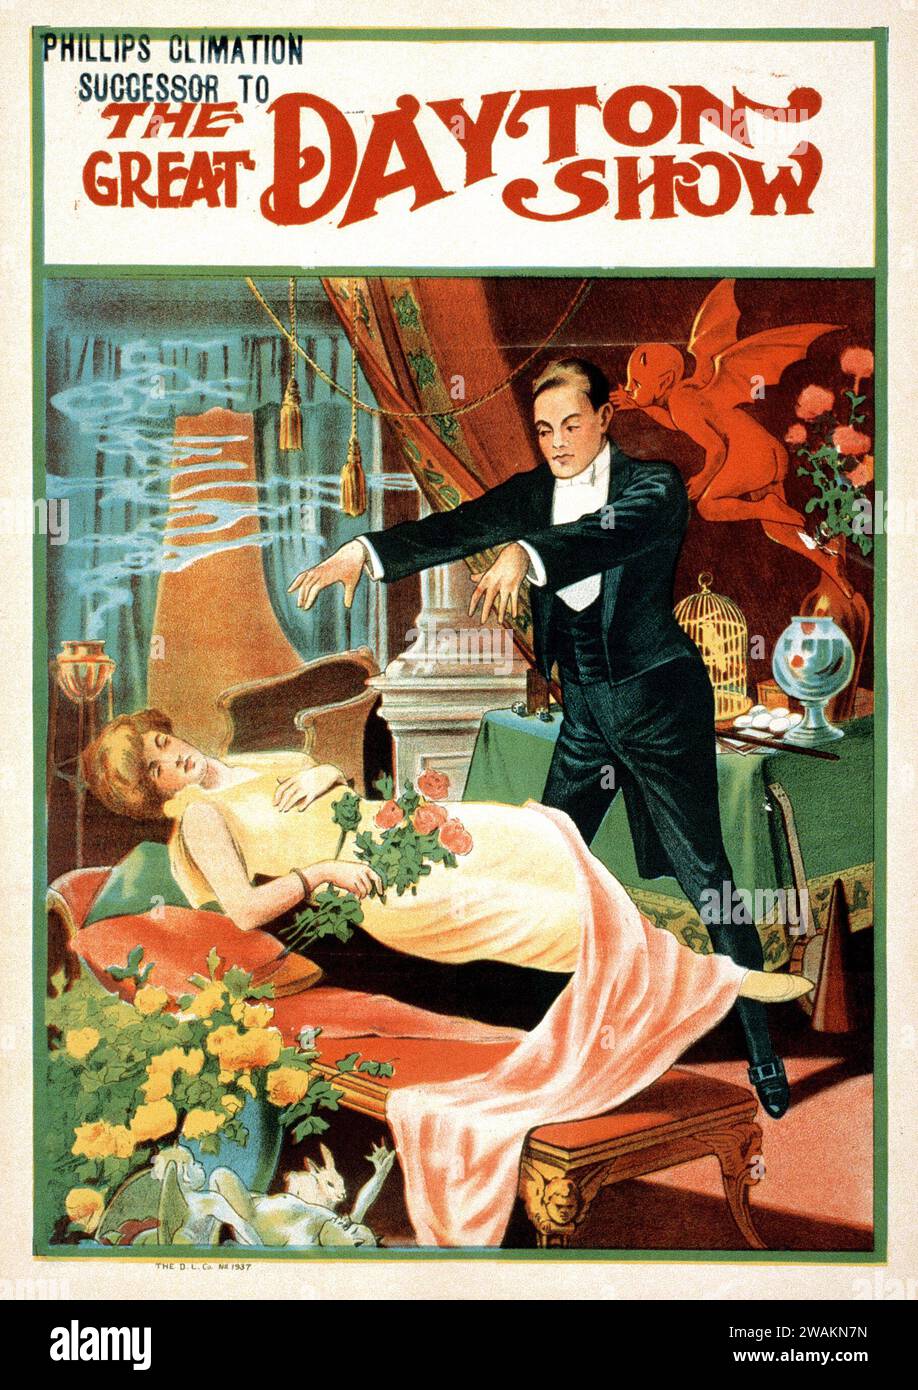 Phllips Climation, il successore del Great Dayton Show - poster dello spettacolo Magico con una signora galleggiante e demoni Foto Stock